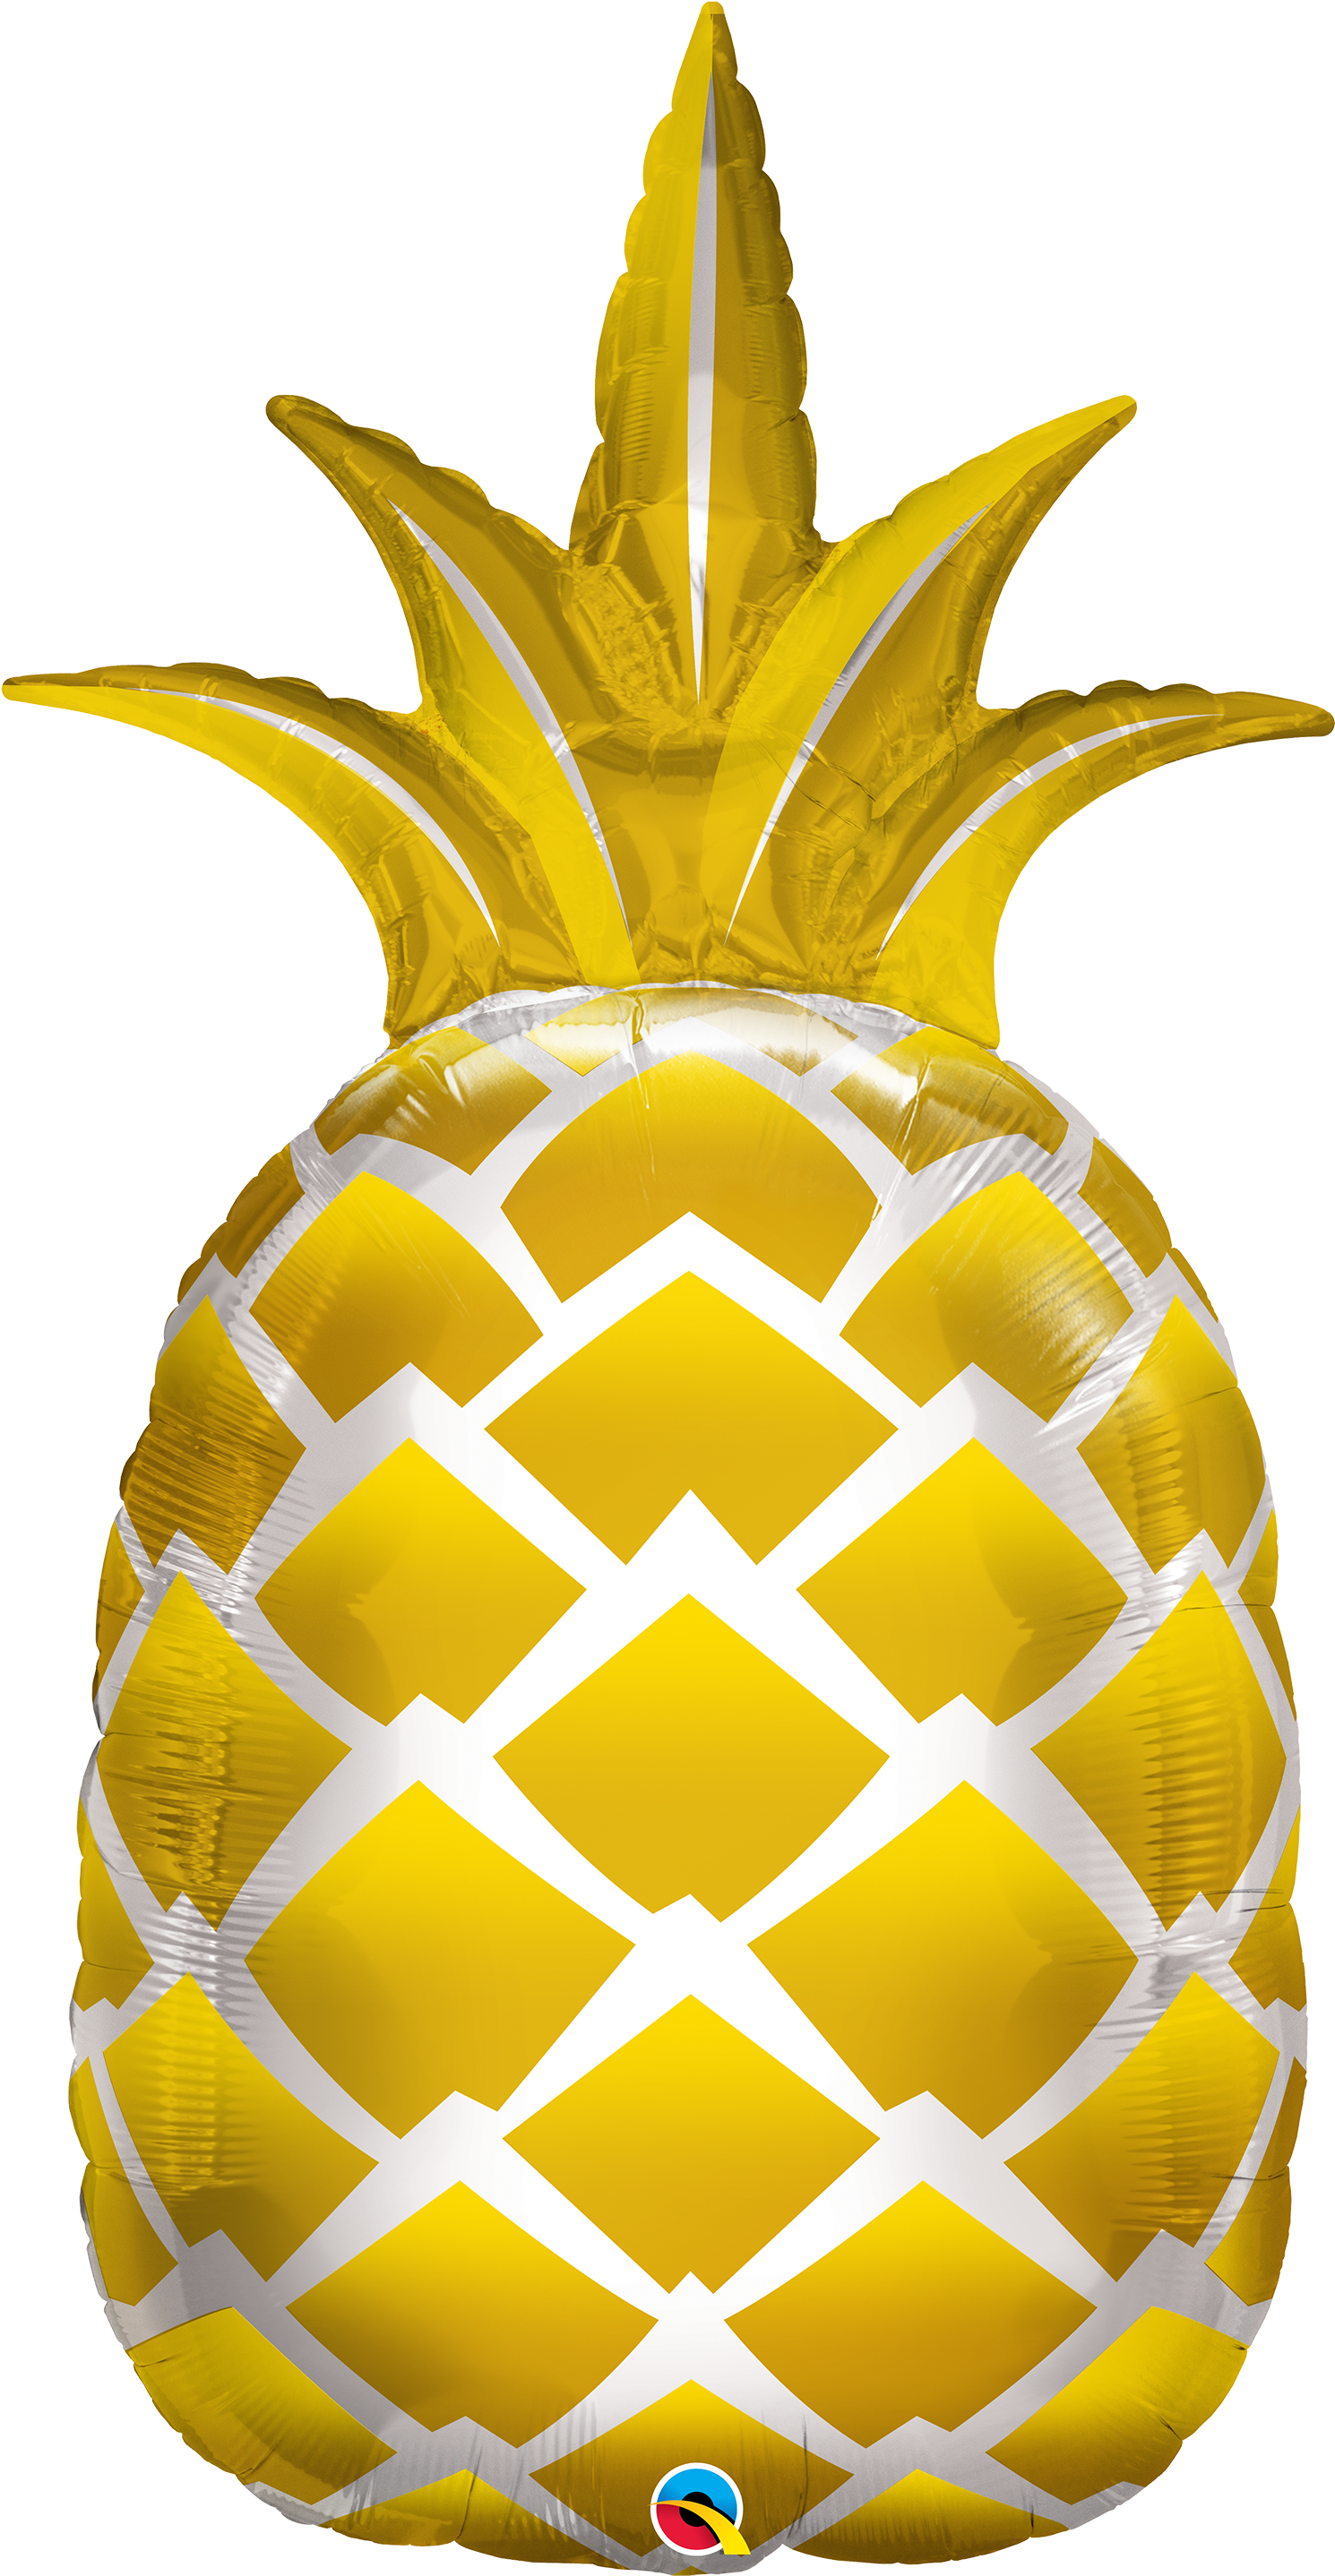 Pineapple Balloon (1500x2895)